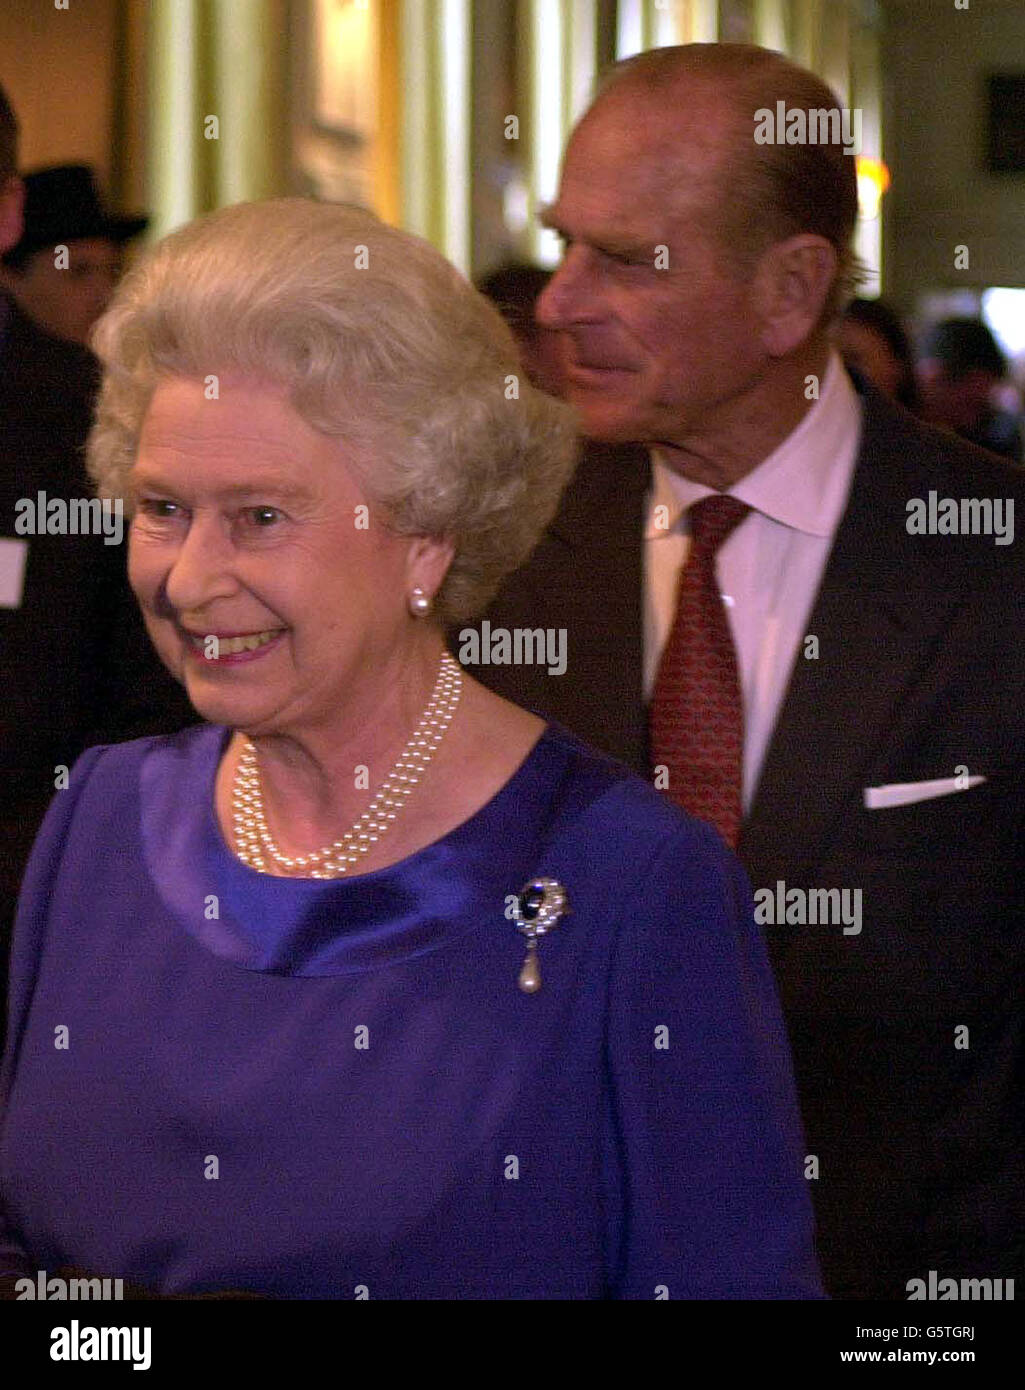 La Reina Isabel II acoge la Recepción Real en el Palacio Holyrood, Edimburgo, para conmemorar su Jubileo de Oro. Foto de stock